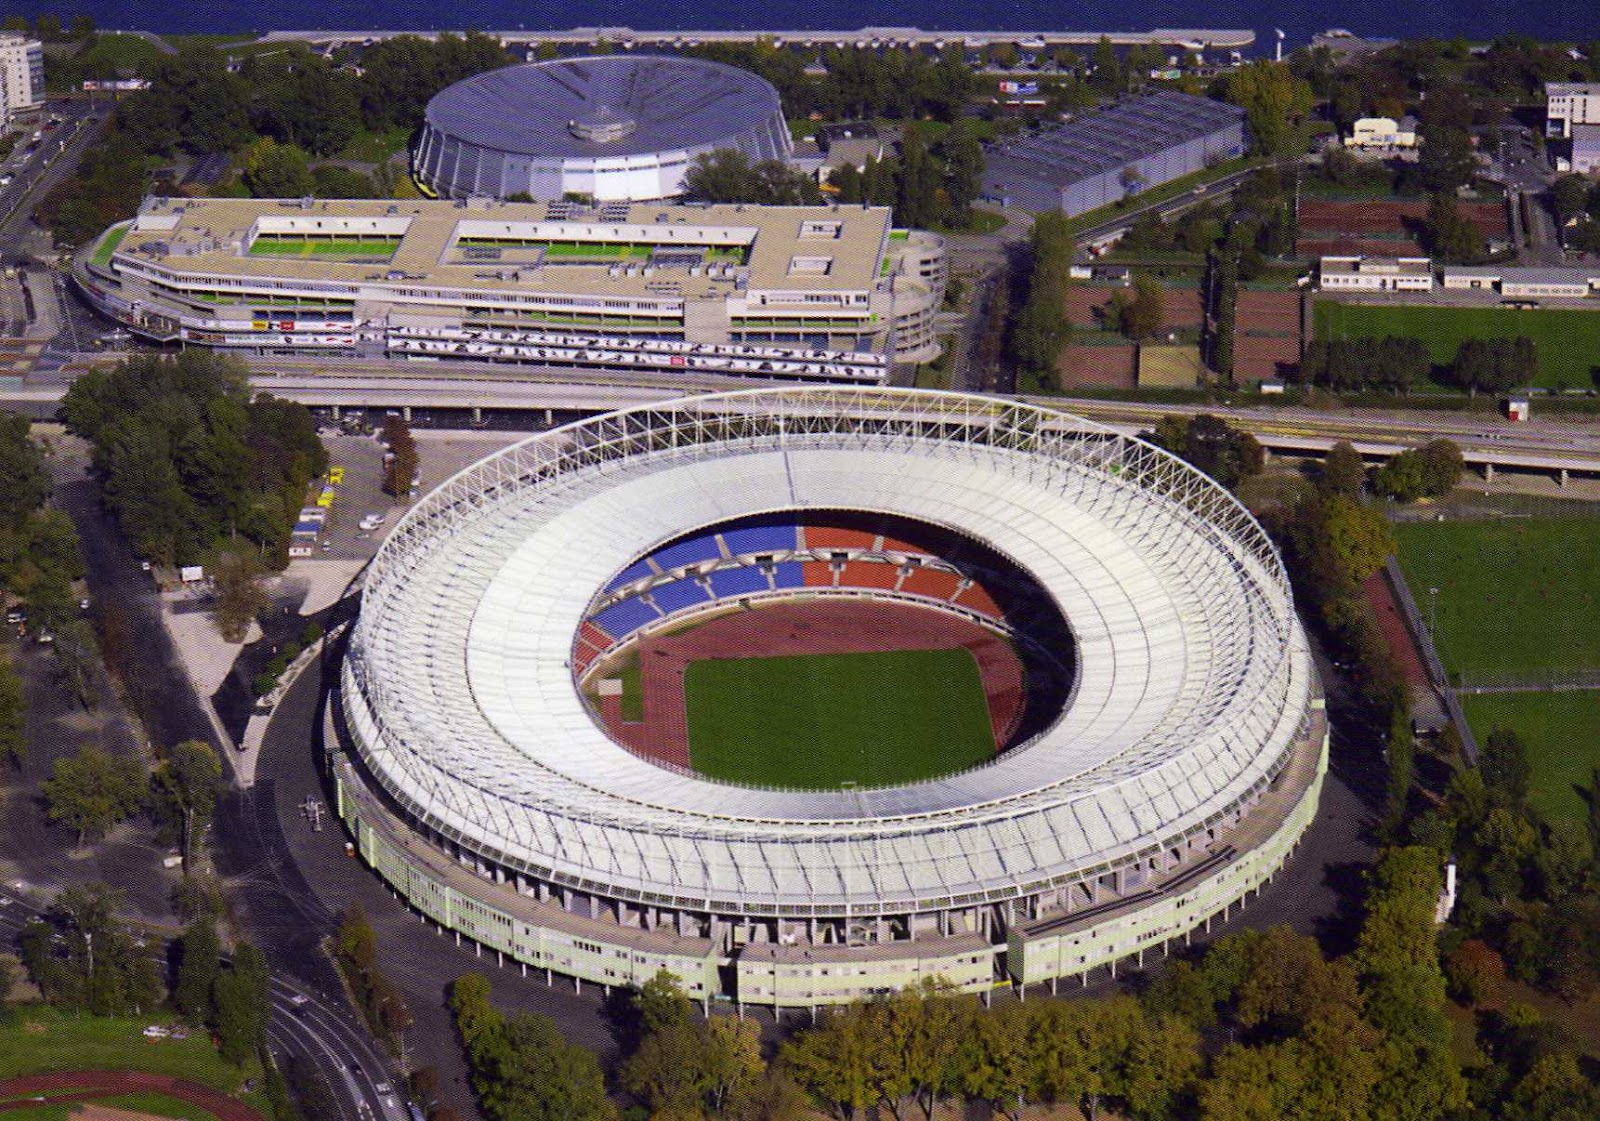 Ernst-Happel stadium in Vienna: Prater lifelong